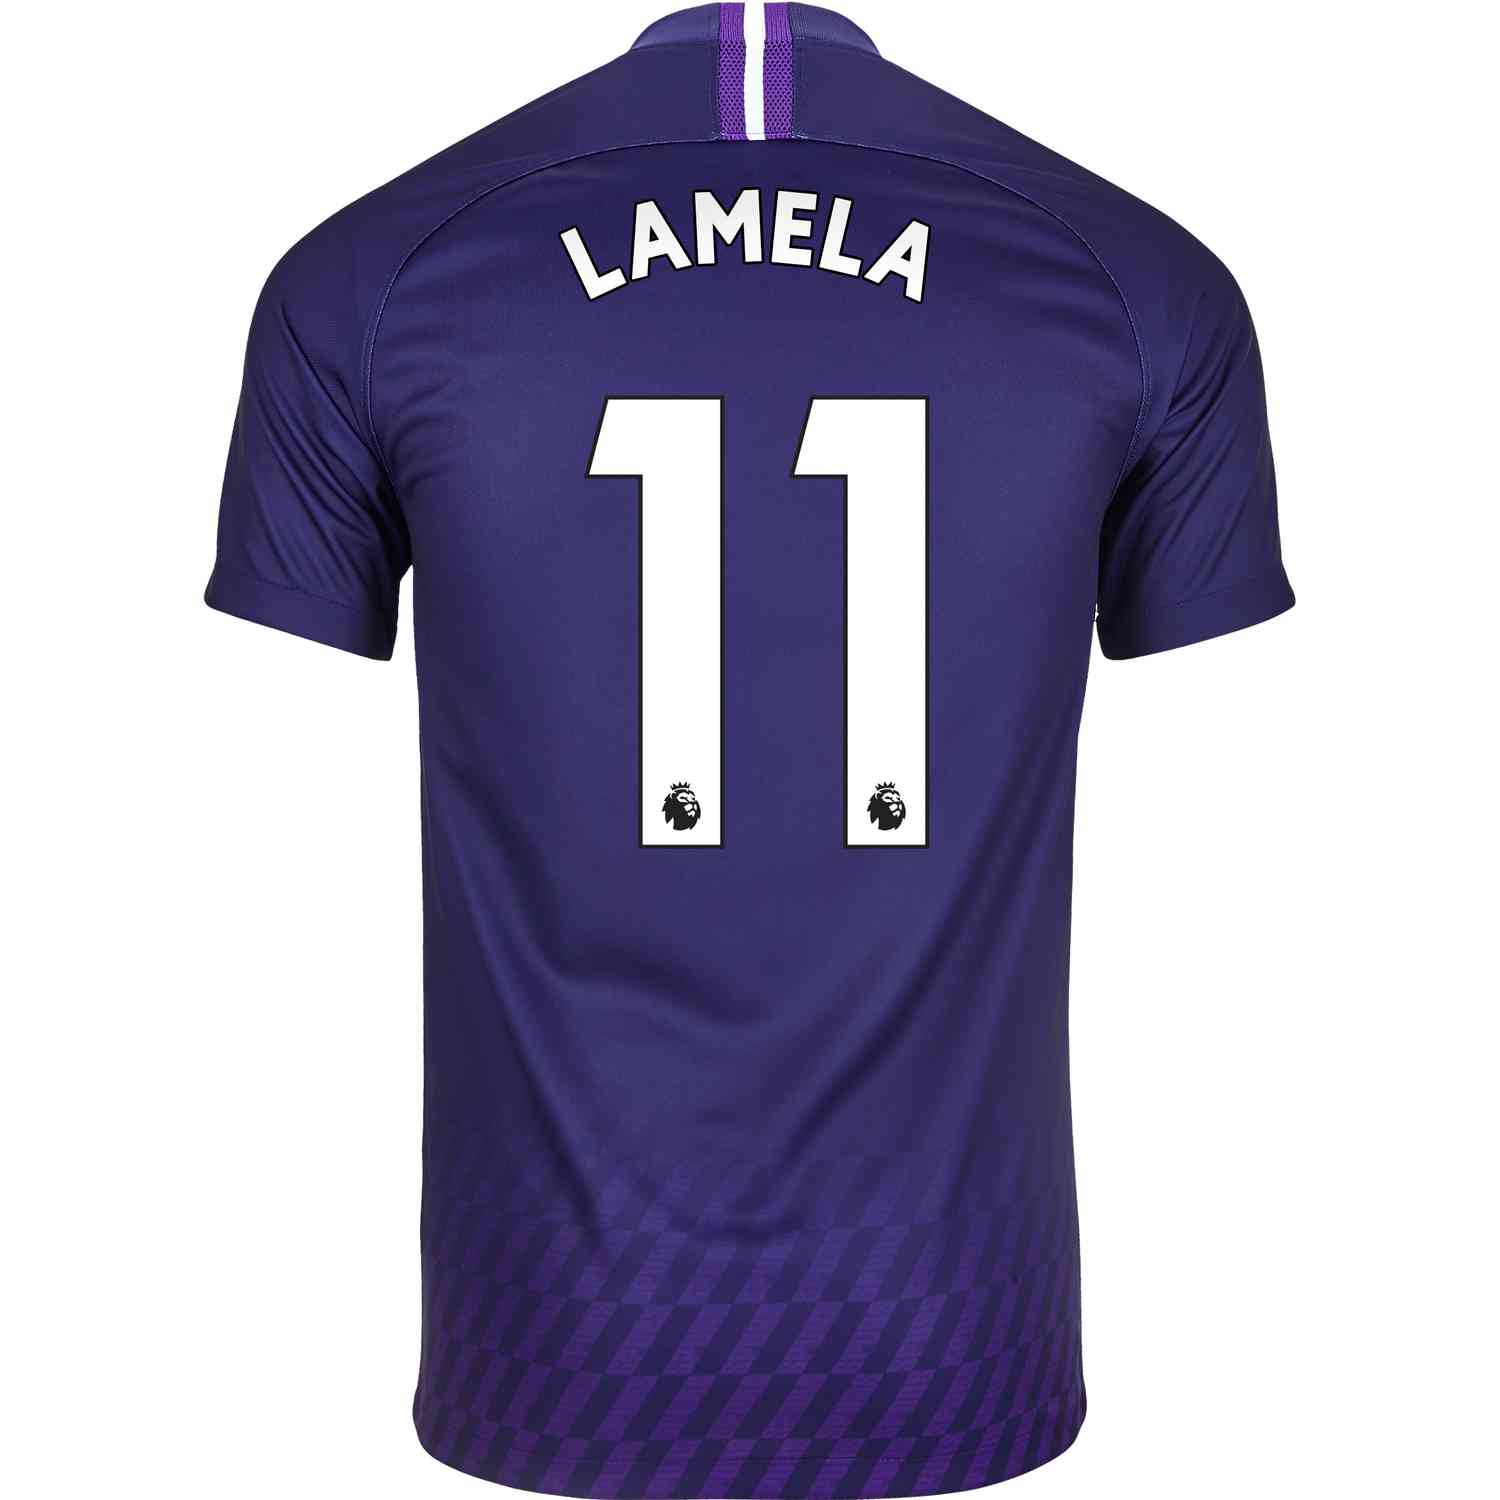 2019/20 Nike Erik Lamela Tottenham Away 